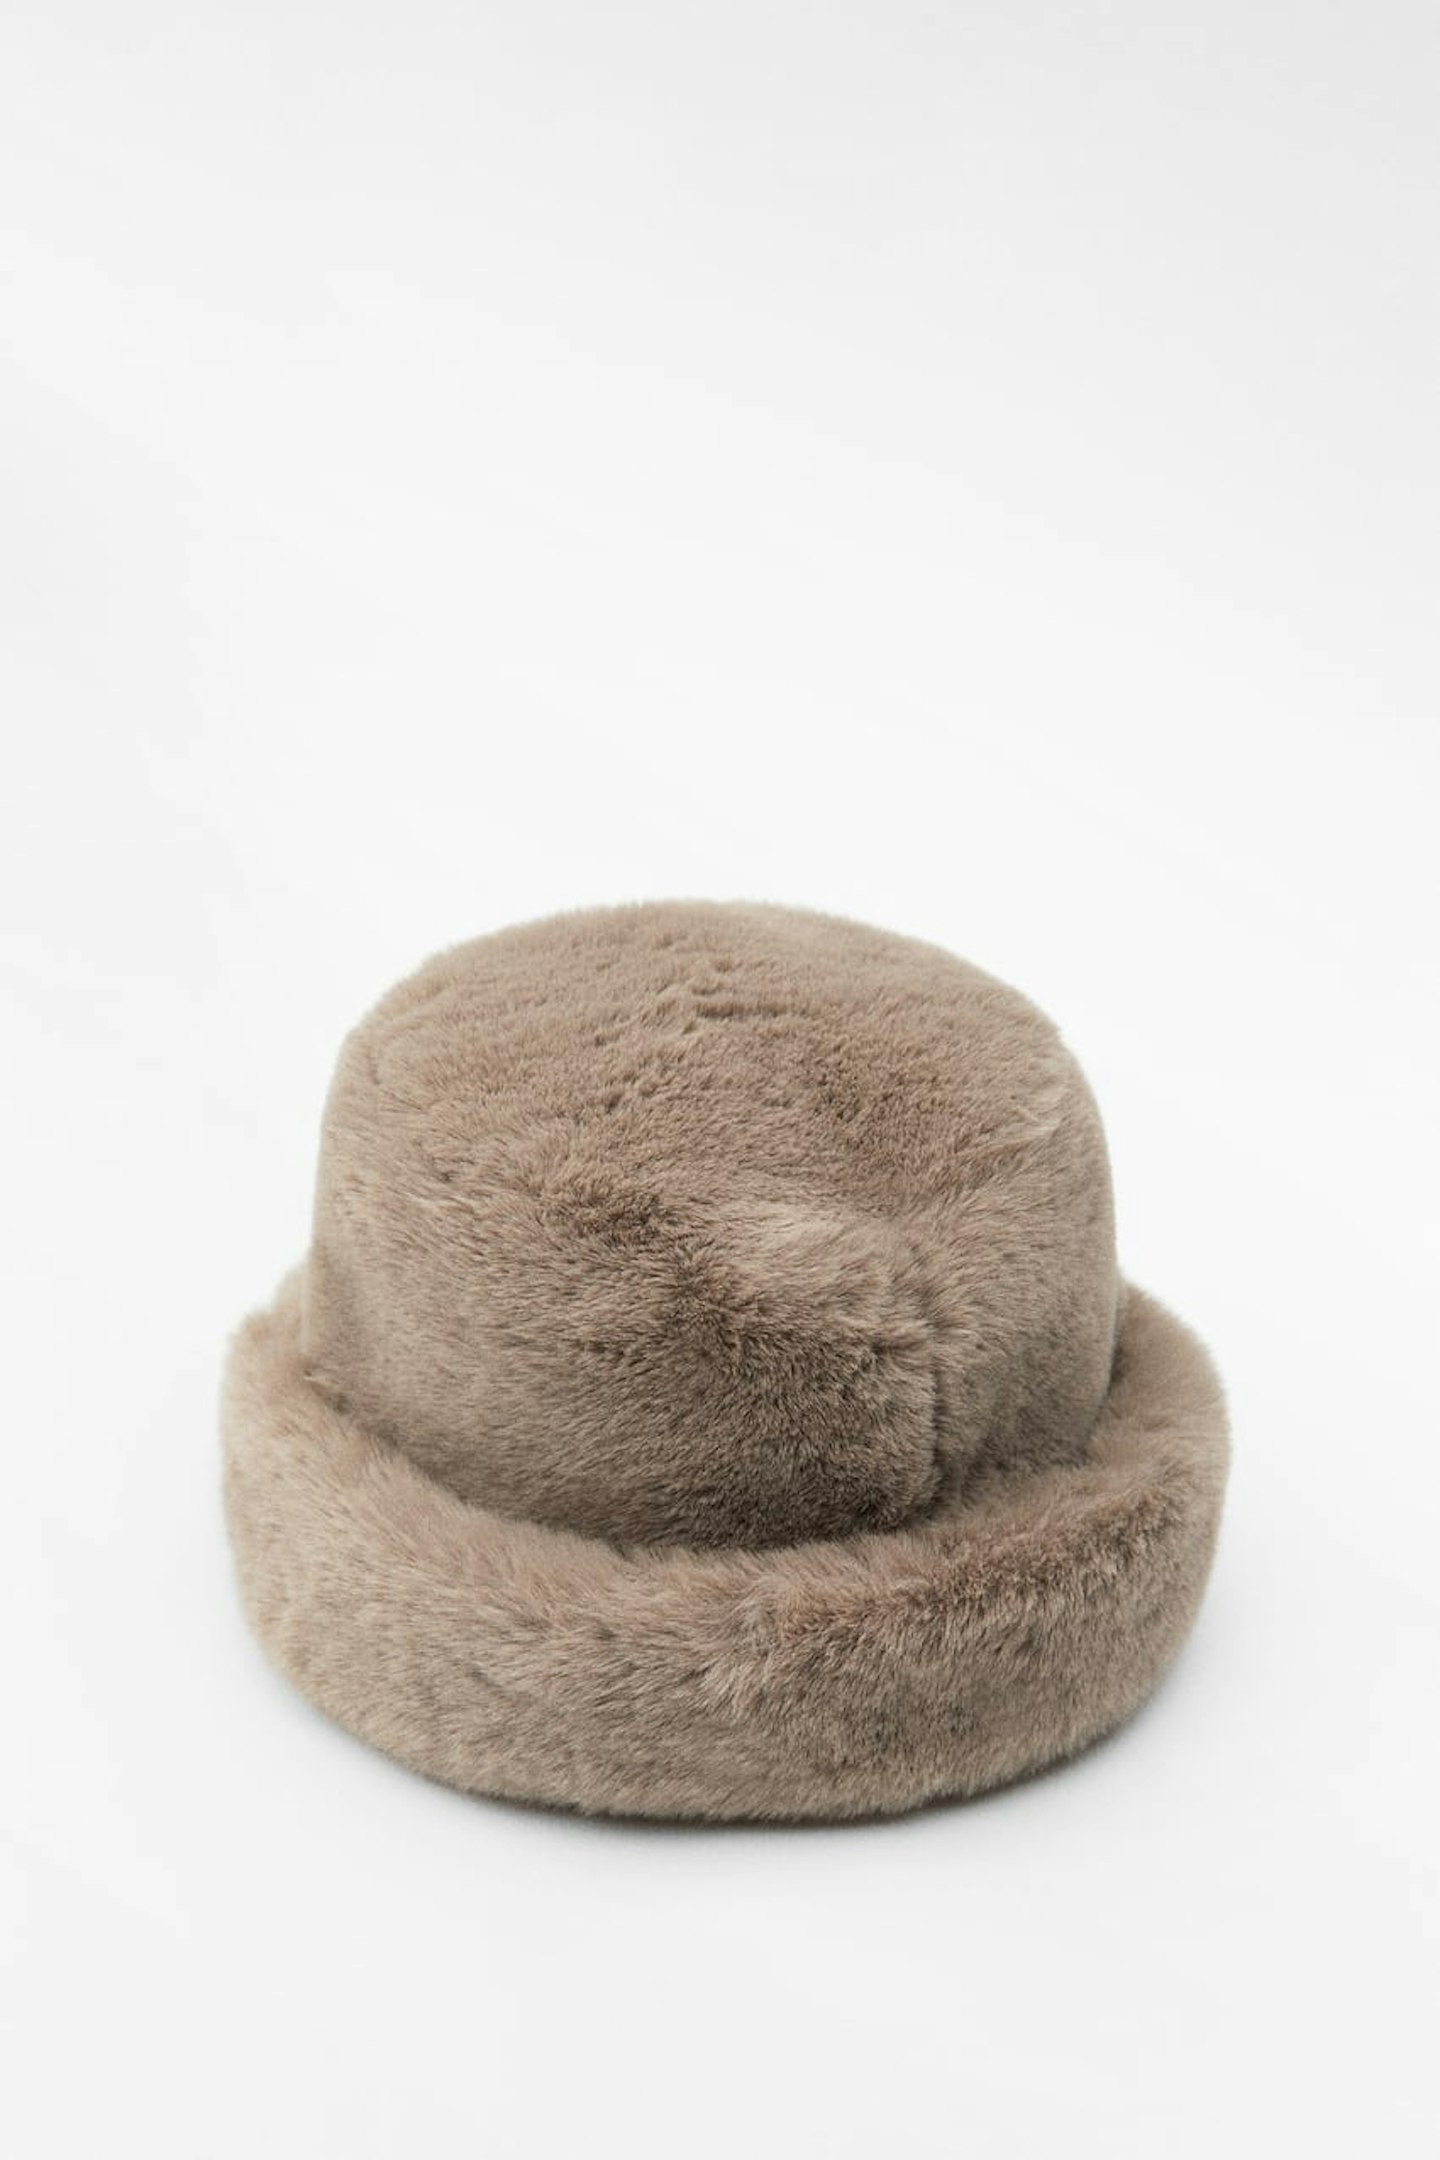 Zara Faux Fur Bucket Hats